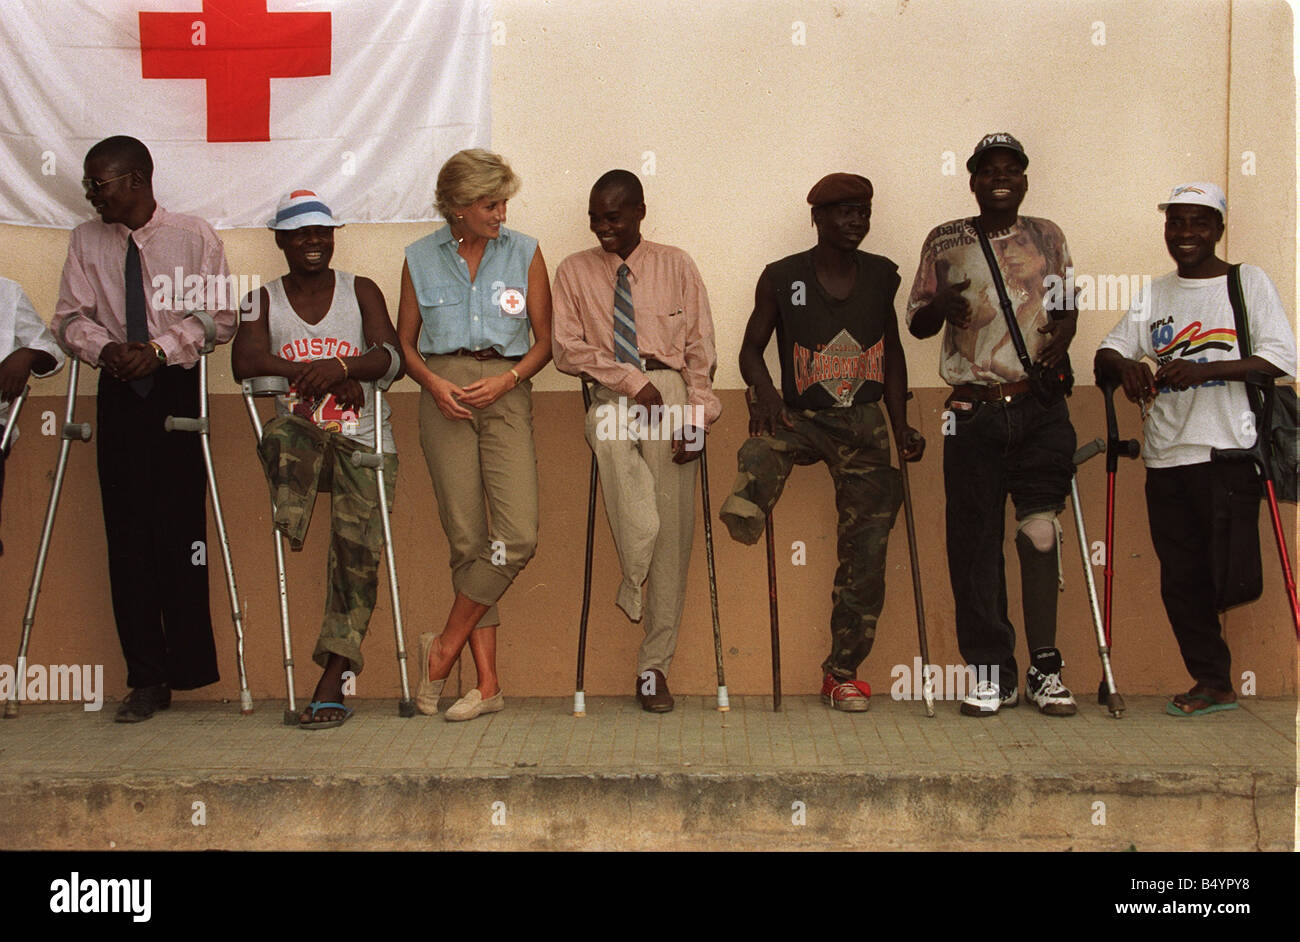 Princess Diana visiting landmine victims at the orthopaedic centre at Ruanda Angola War Conflict Angola Civil War Amputees Crutches Royalty Princess Diana Princess of Wales Charity January 1997 1990s everettselected Stock Photo